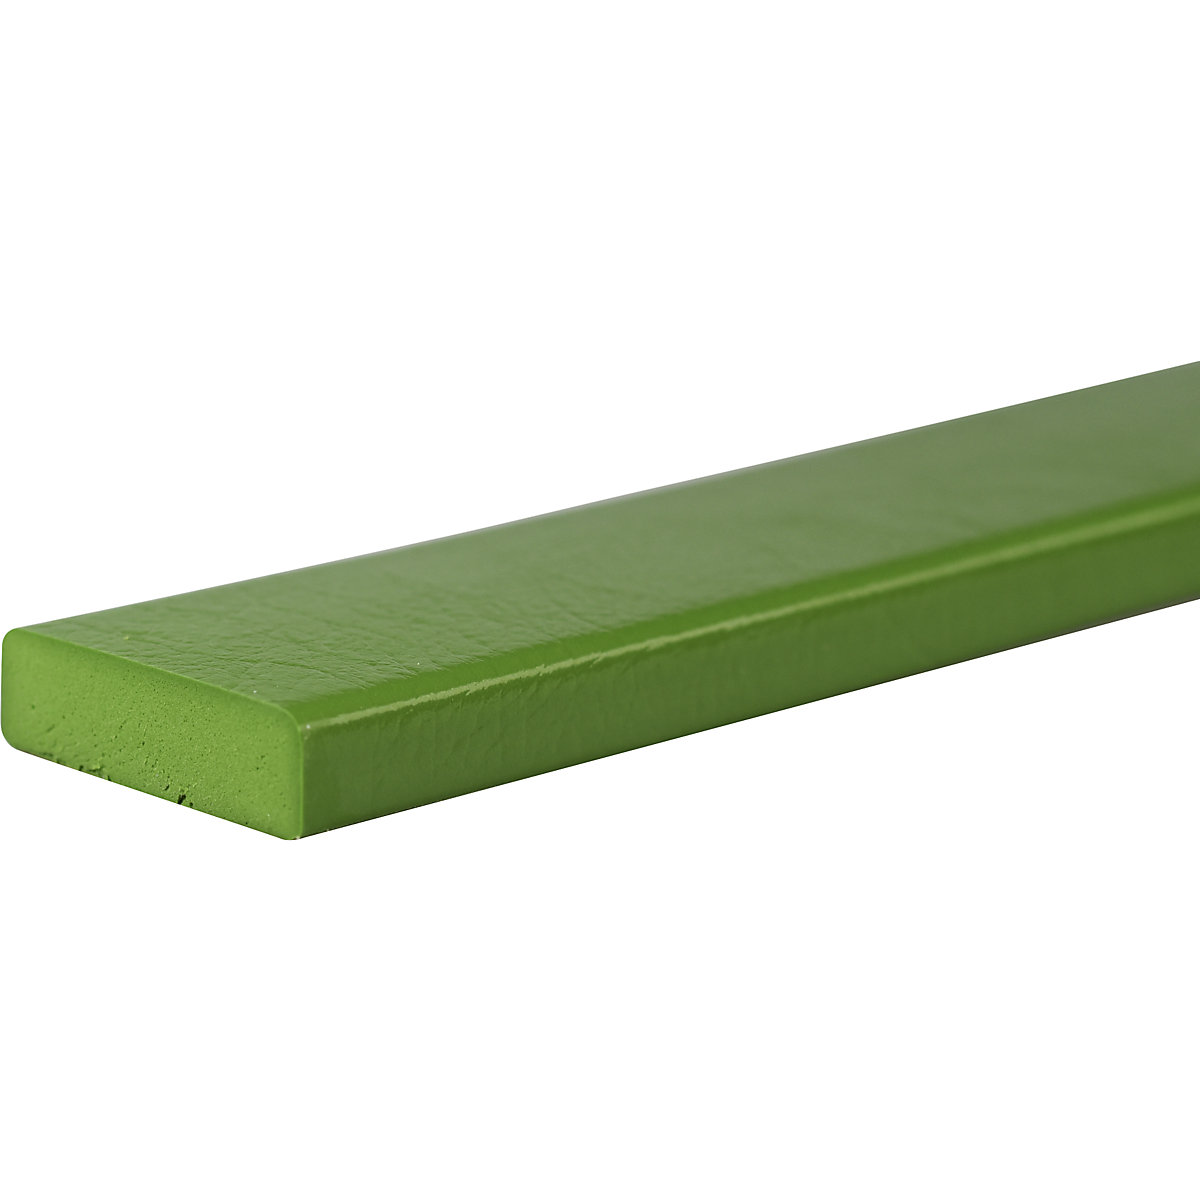 Zaščita površin Knuffi® – SHG, tip S, kos 1 m, zelene barve-19